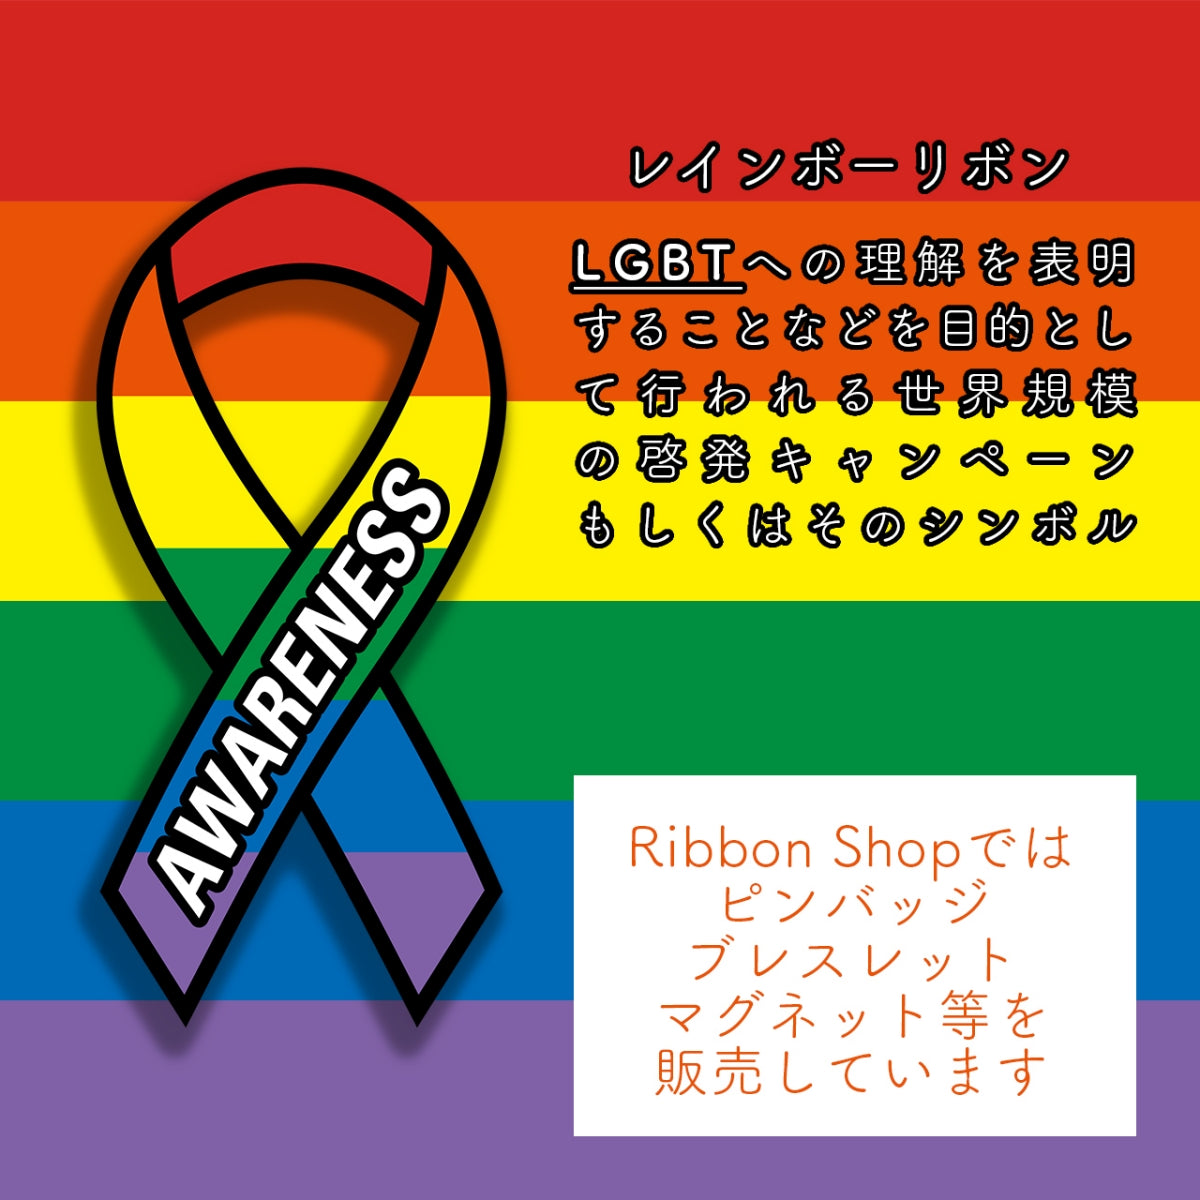 レインボー リボン ピンバッジ ブレスレット セット大 ギフトボックス付 LGBT SDGs ゲイ レズ プライド 性的少数者 アウェアネス ピンバッチ シリコン